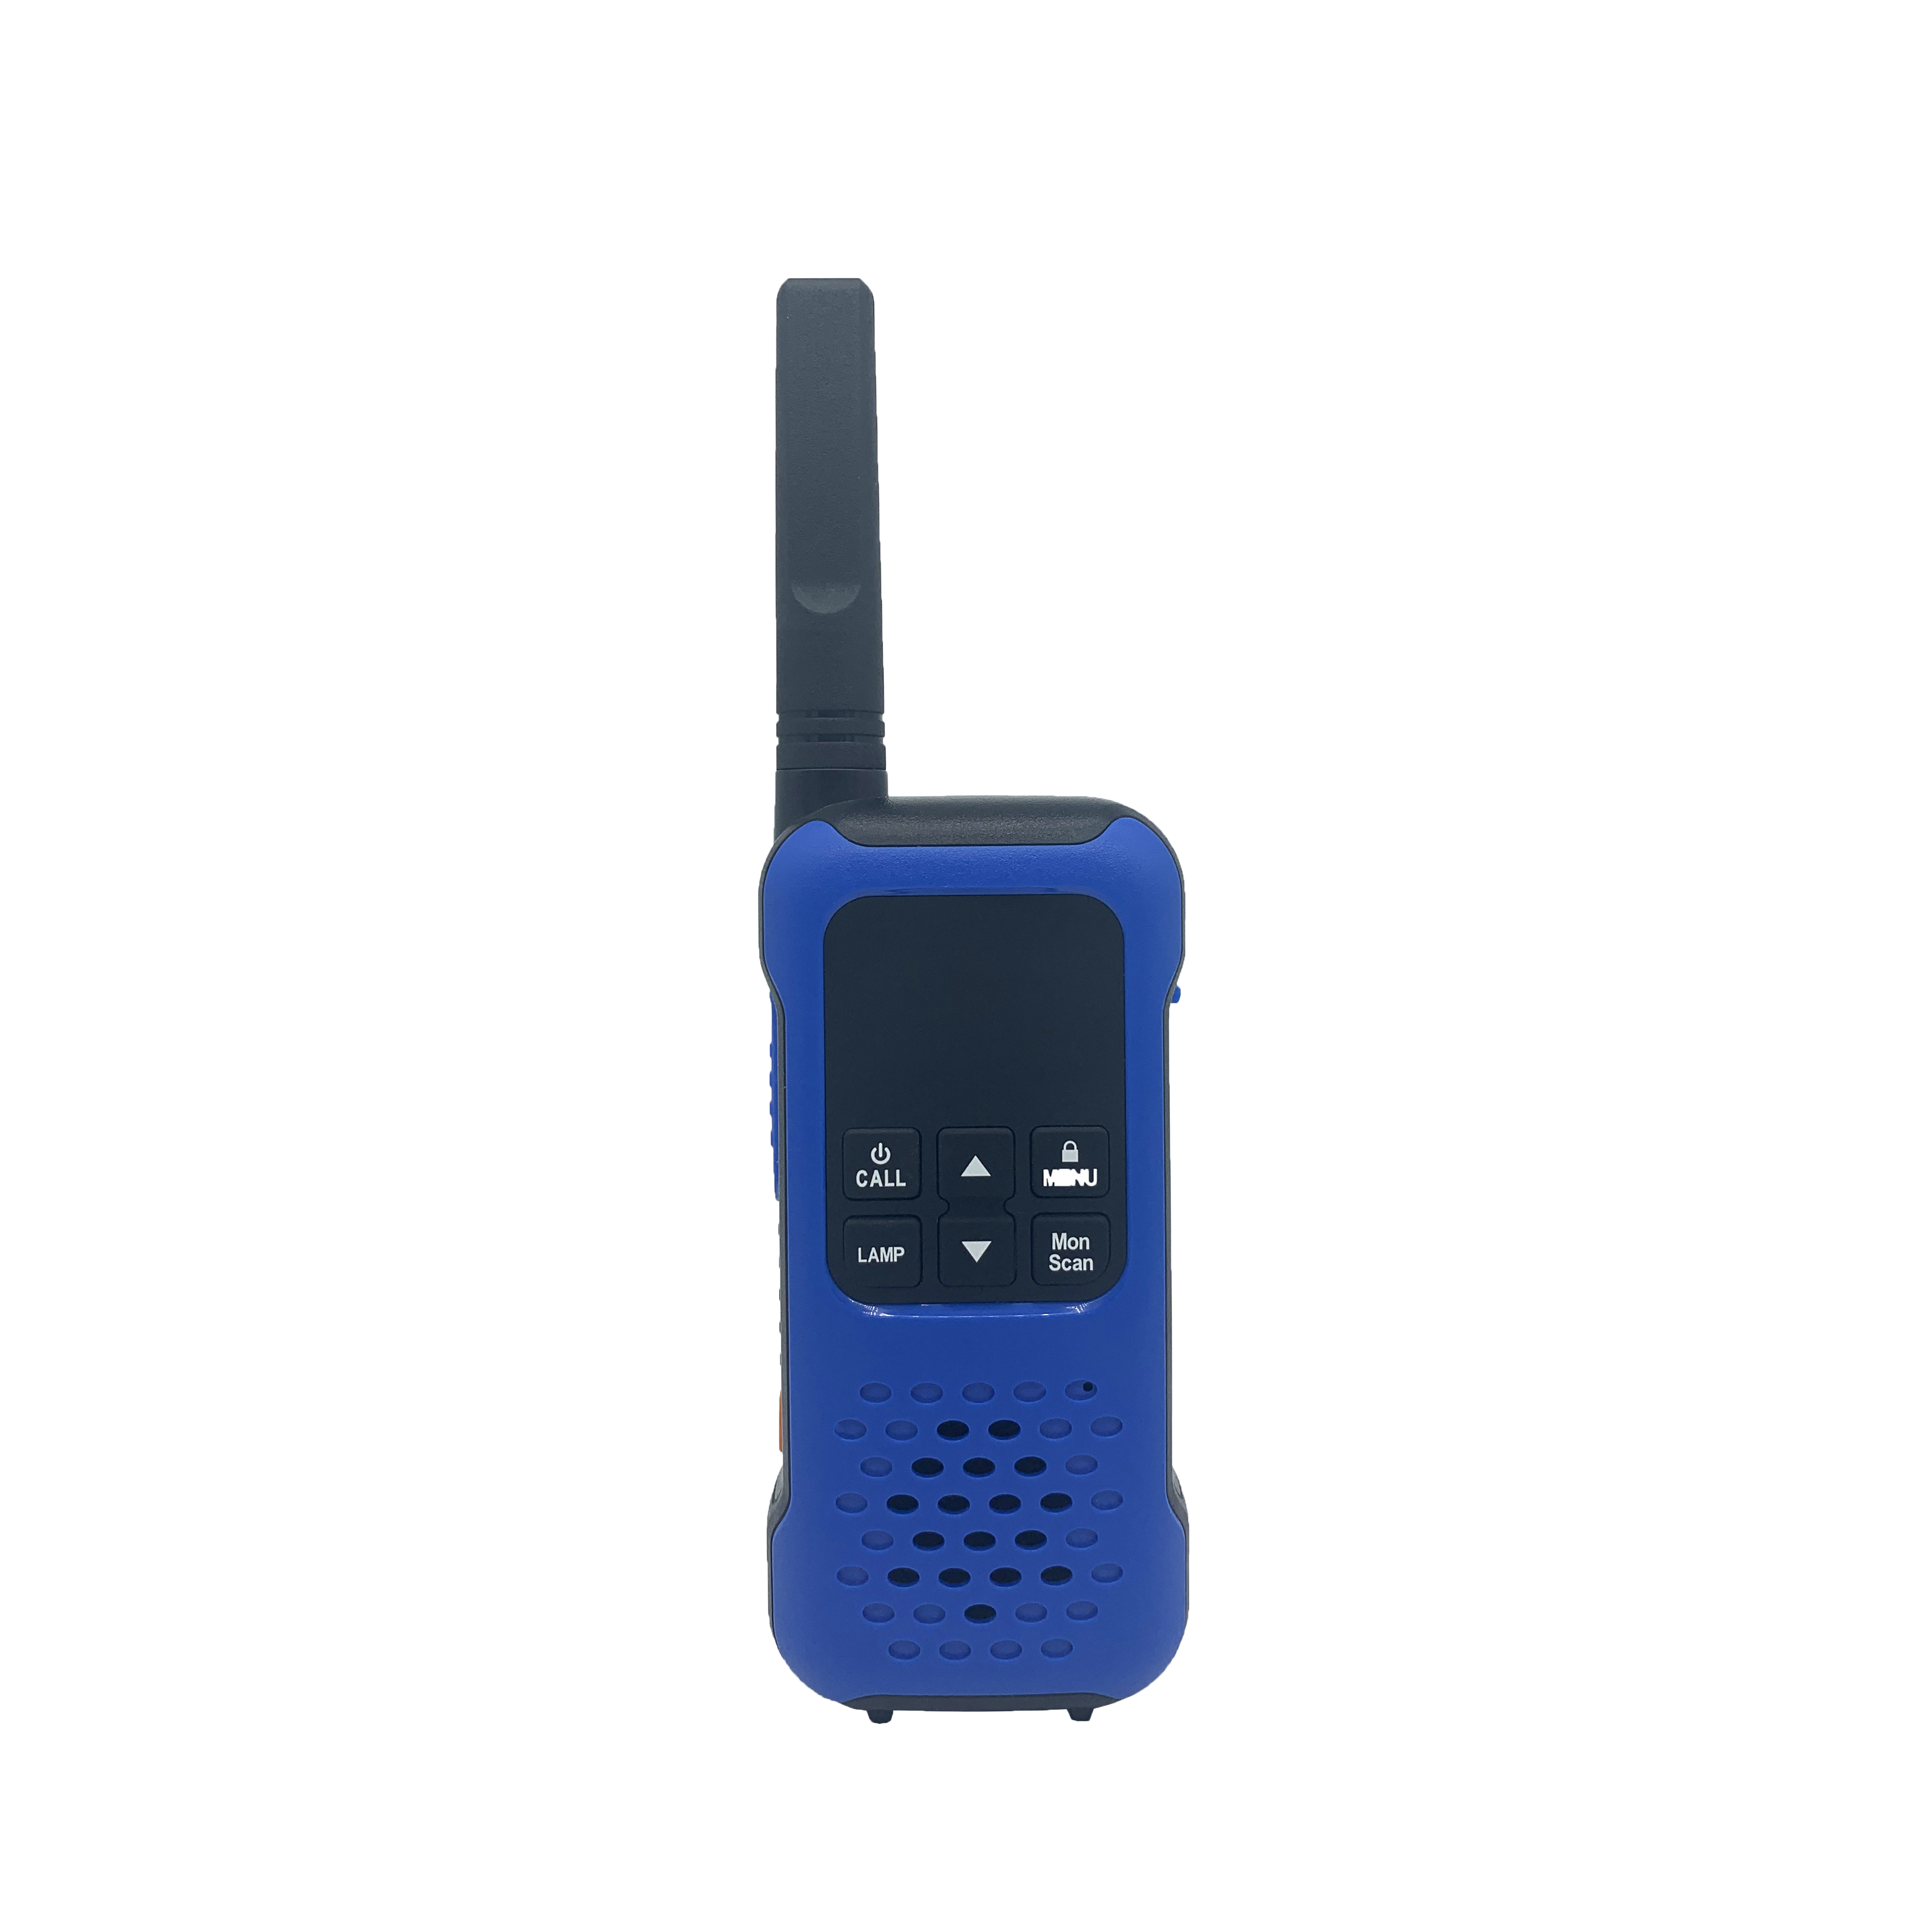 QYT analogowe długodystansowe radio walkie talkie pMR446
